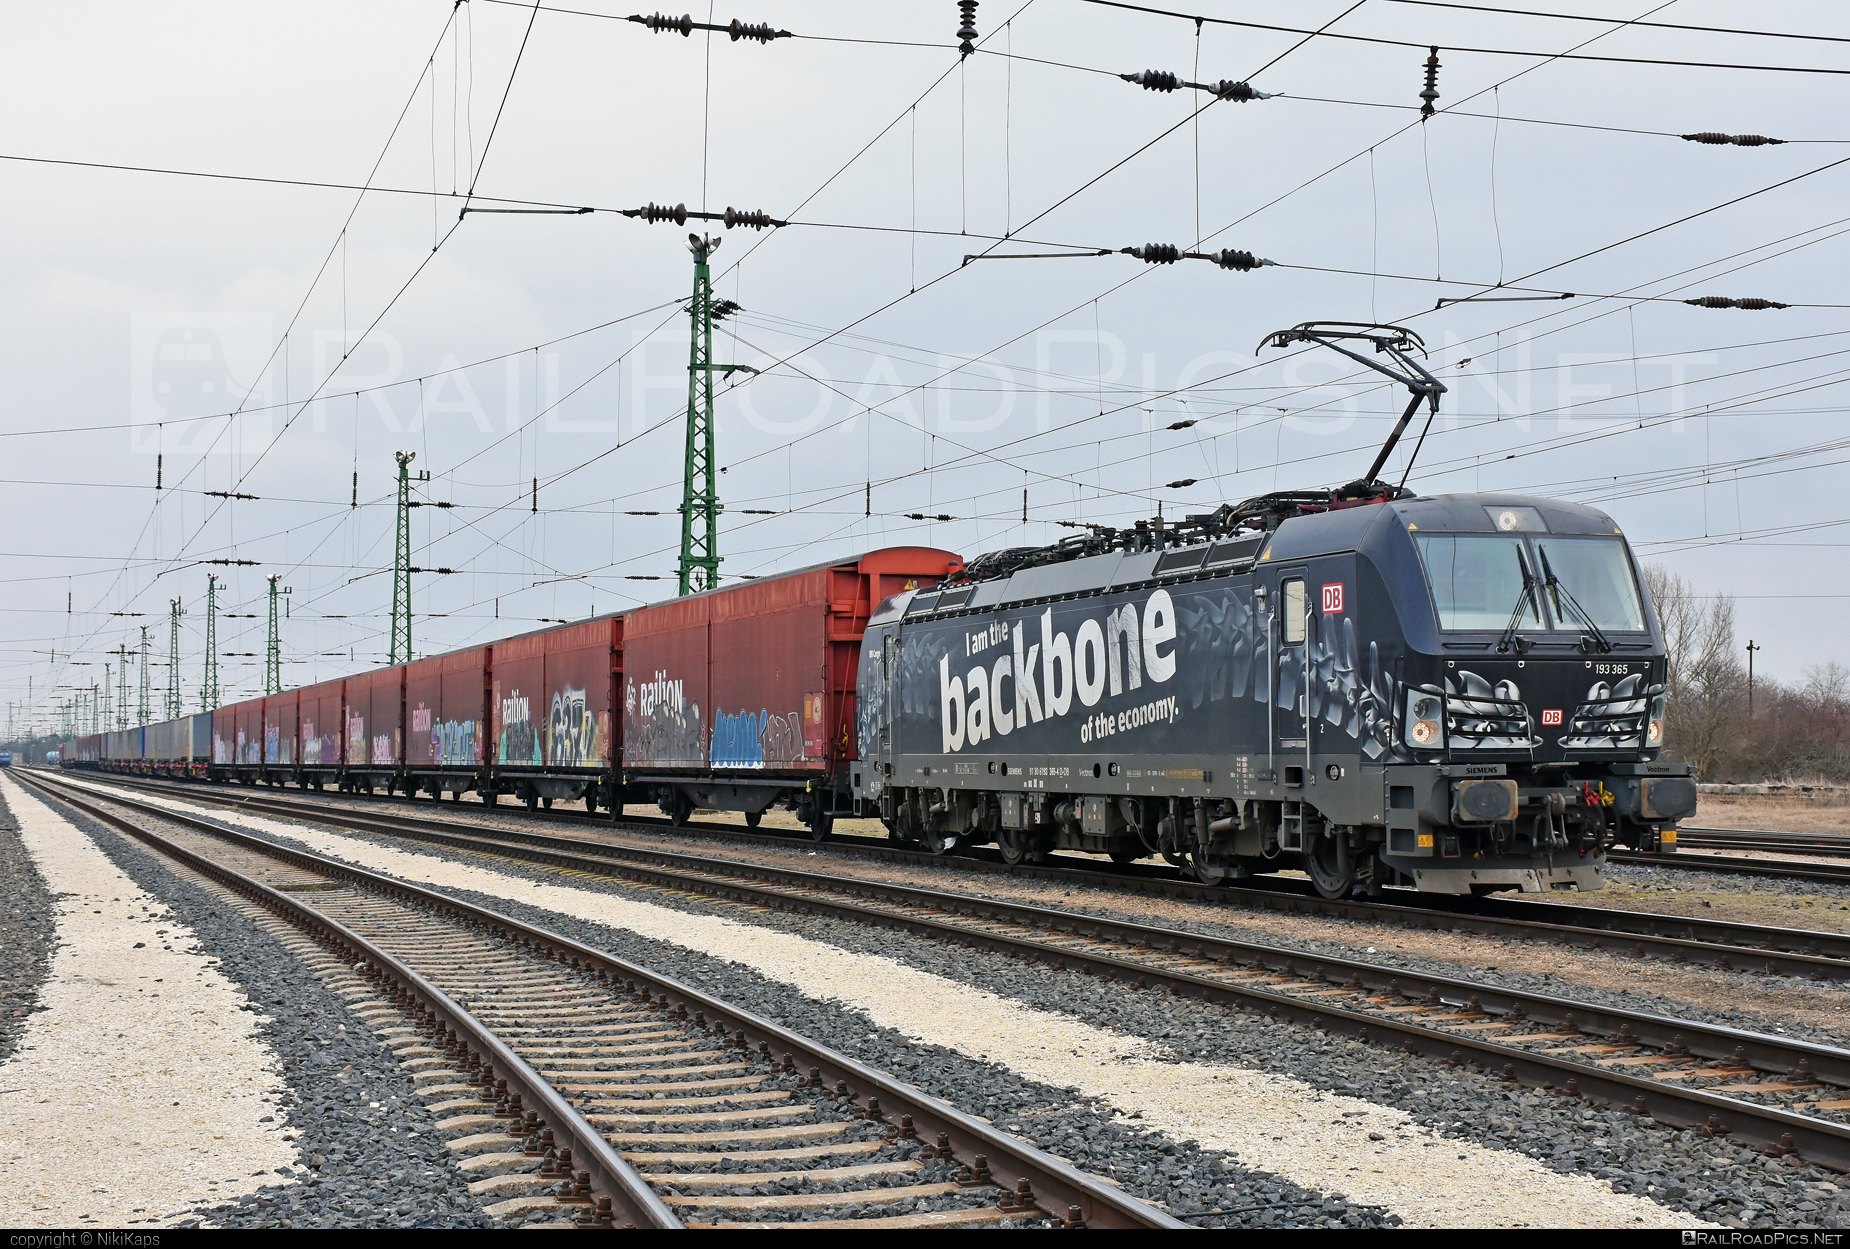 Siemens Vectron MS - 193 365 operated by DB Cargo AG #db #dbcargo #dbcargoag #deutschebahn #graffiti #railion #siemens #siemensVectron #siemensVectronMS #vectron #vectronMS